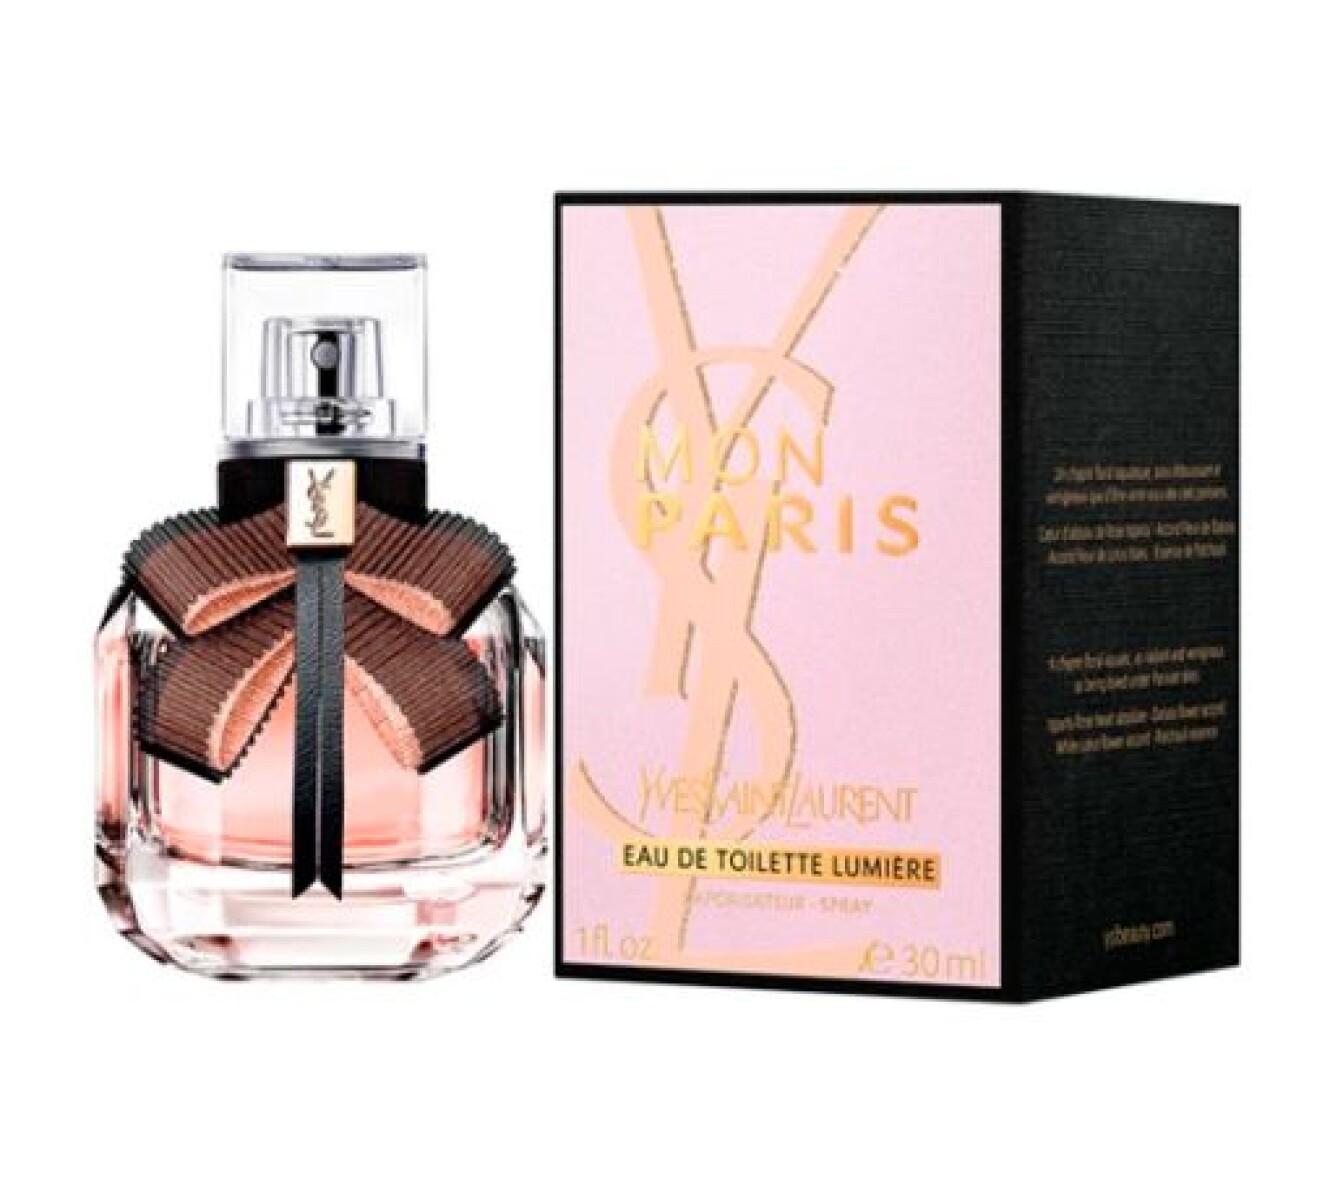 Perfume Yves Saint Laurent Mon Paris Lumiere EDT 30 ml 